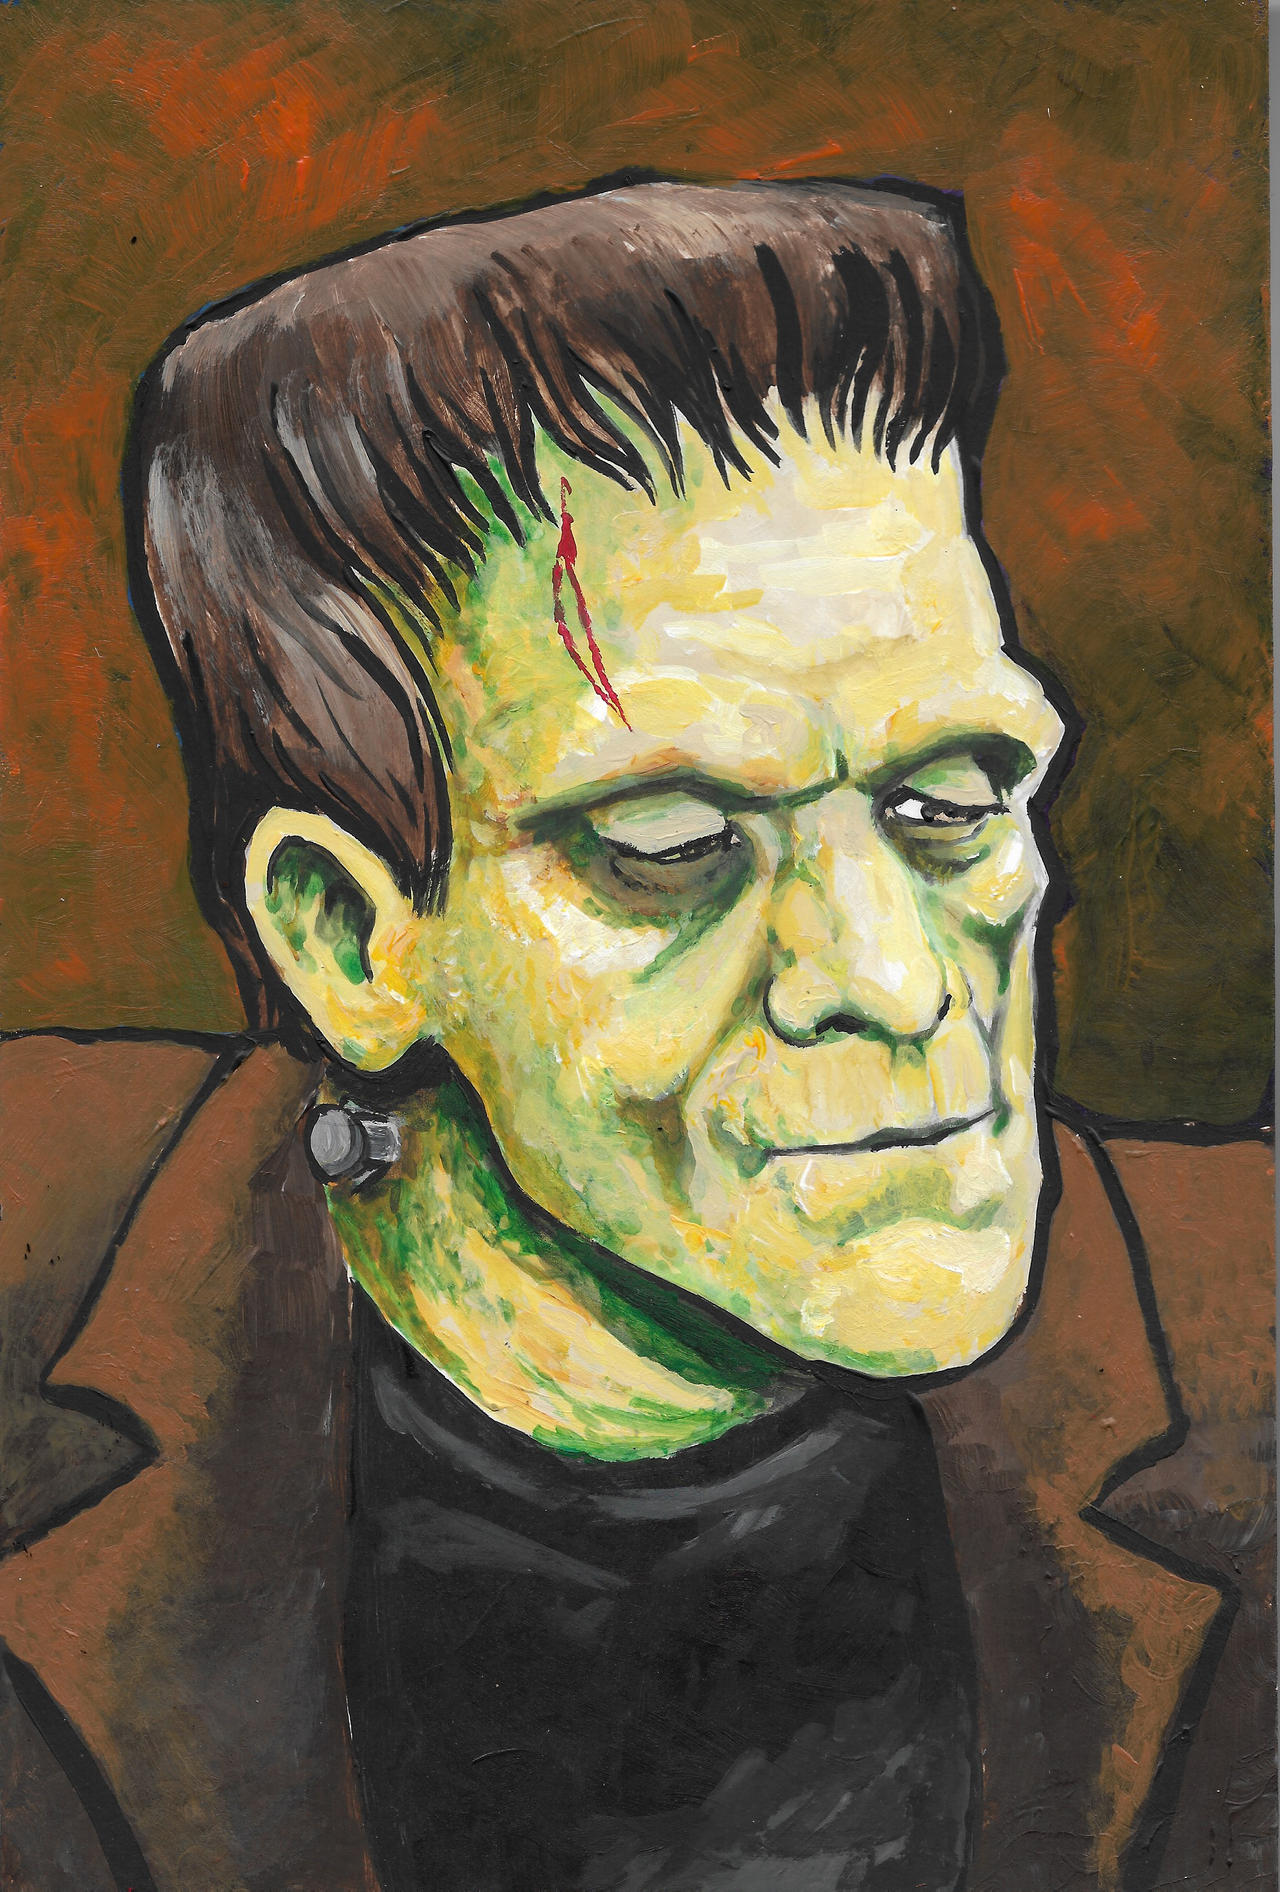 Frankenstein Monster by sugarrayfinhead on DeviantArt